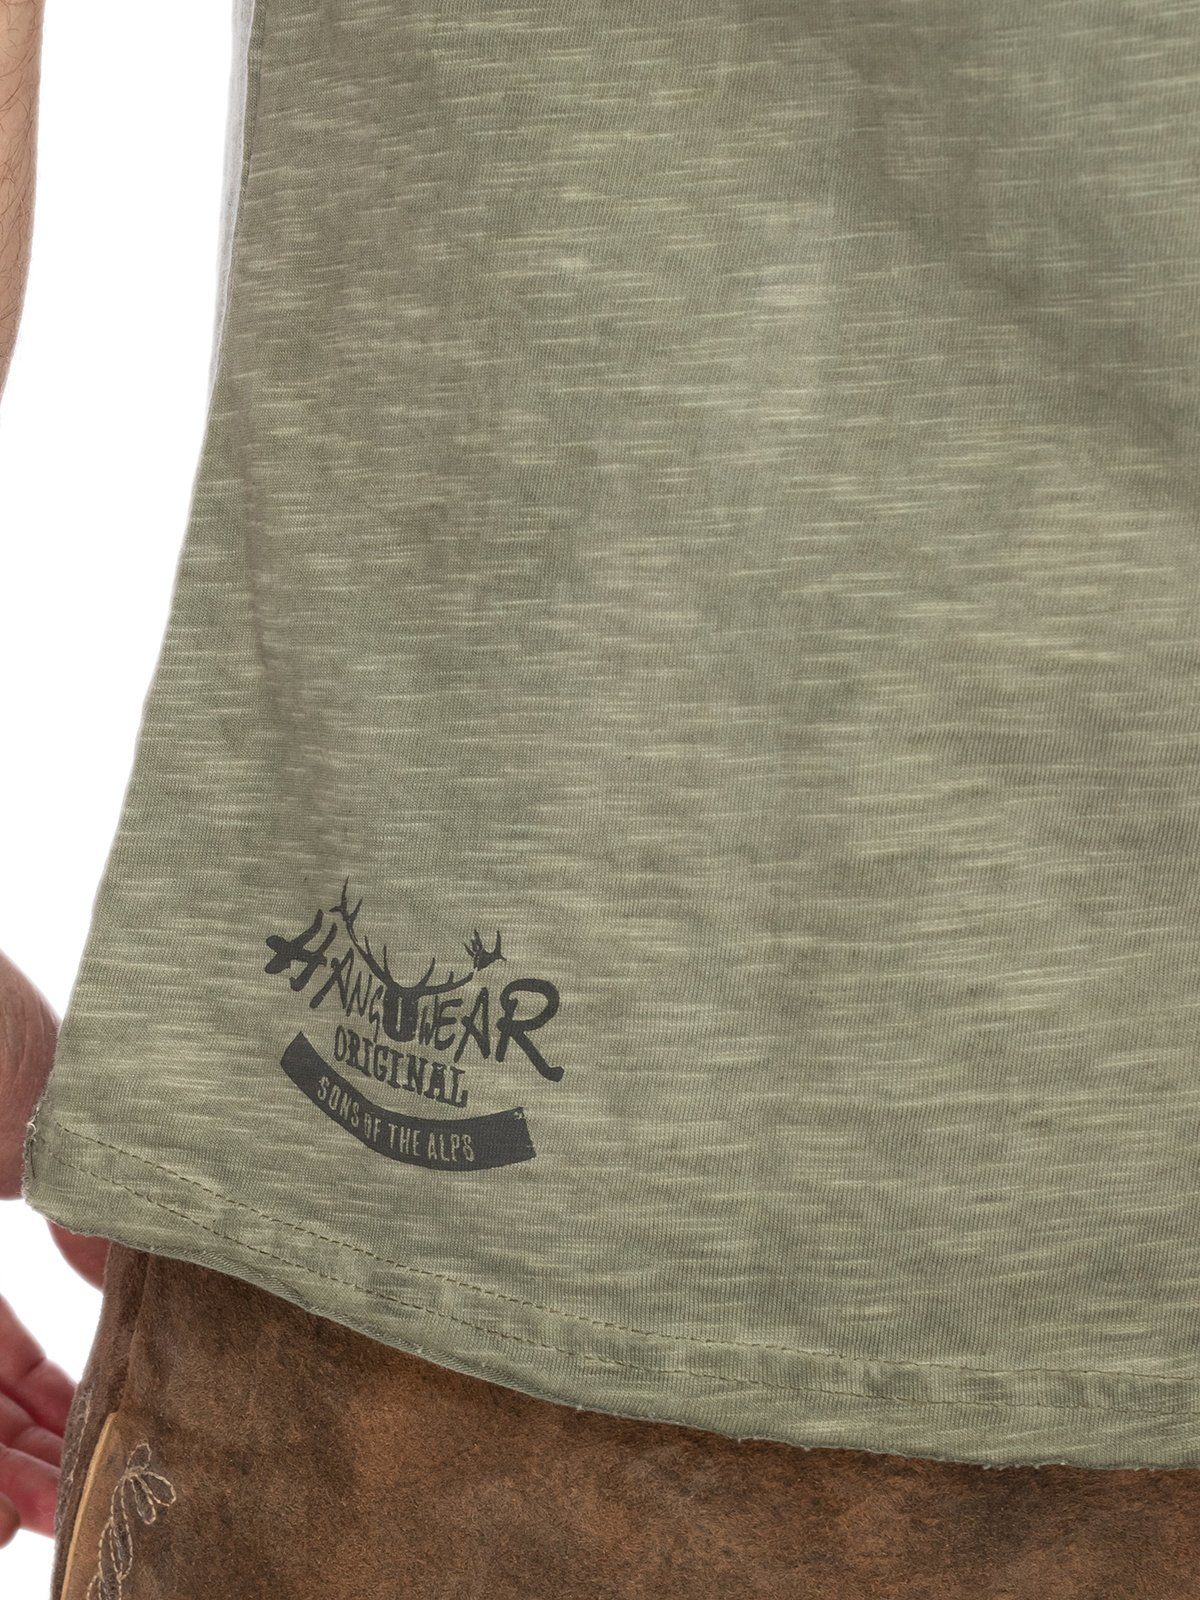 JOHANN Herren T-Shirt T-Shirt oliv Hangowear